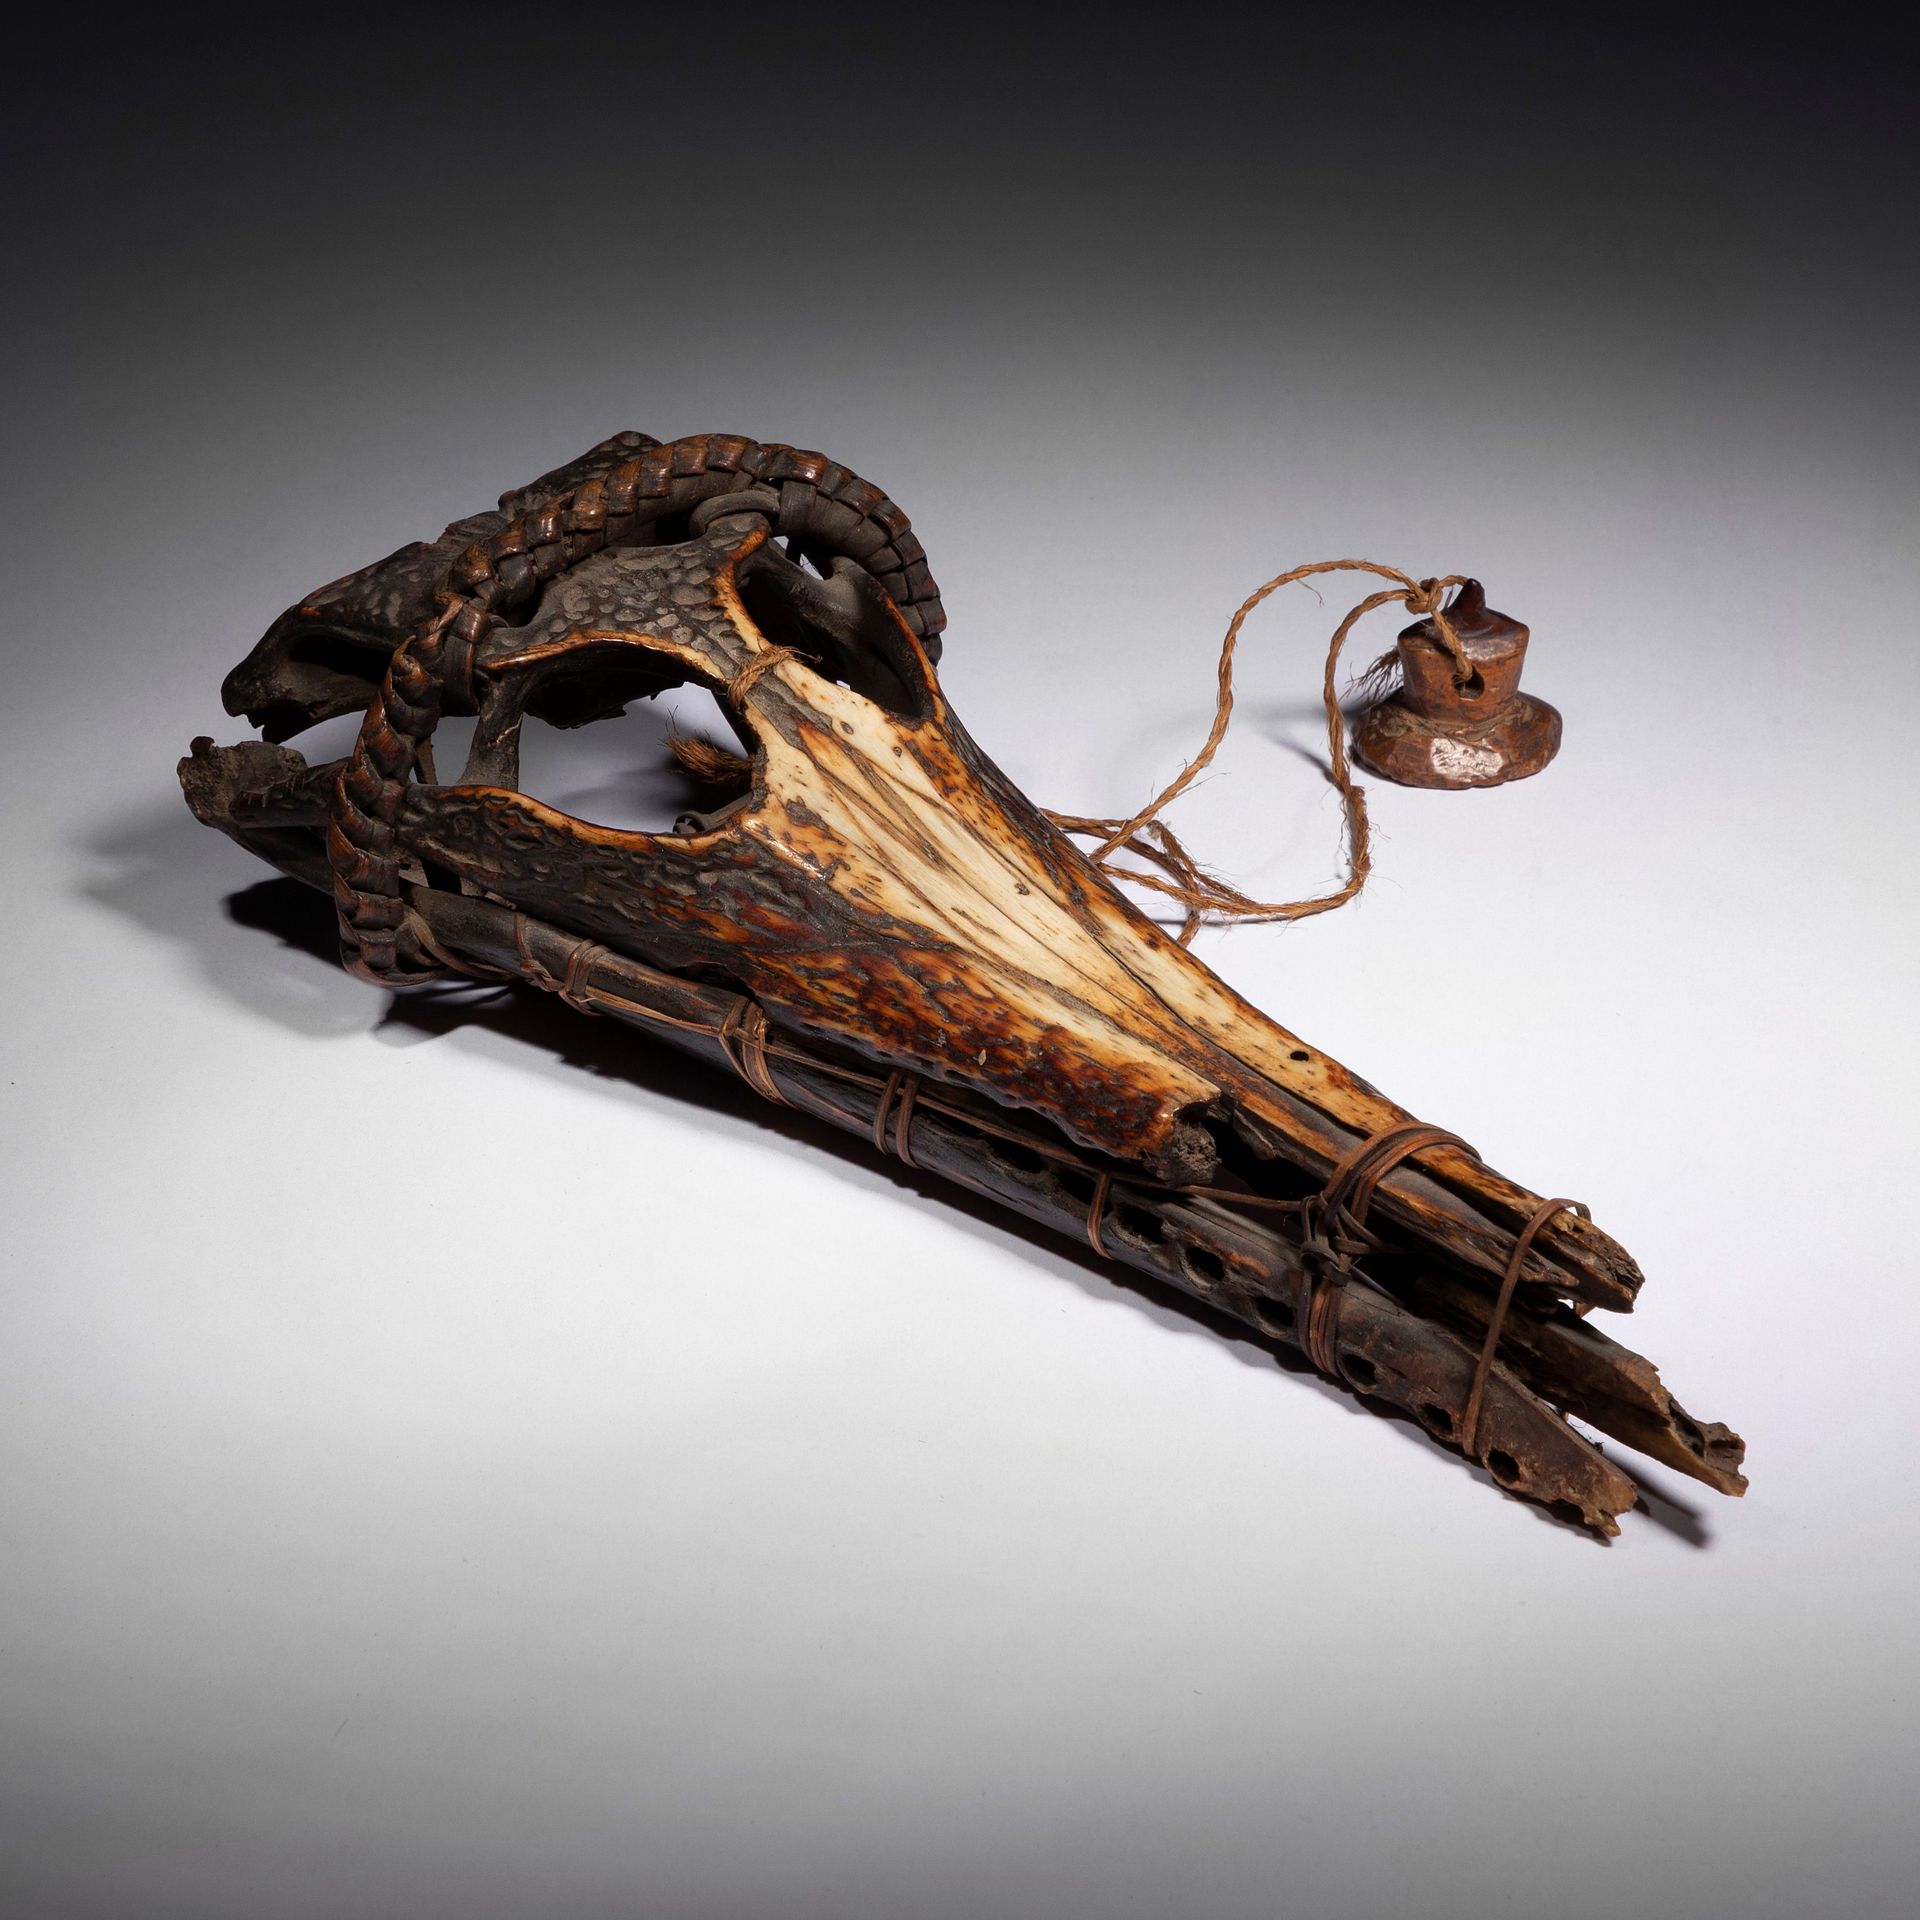 Null 一件罕见的、非常古老的占卜 "物品"，由一个鳄鱼头骨捆绑而成，包括其头部周围美丽的植物纤维辫子，以及用非常坚硬的木材雕刻的占卜摩擦工具。由于向鳄鱼的思&hellip;